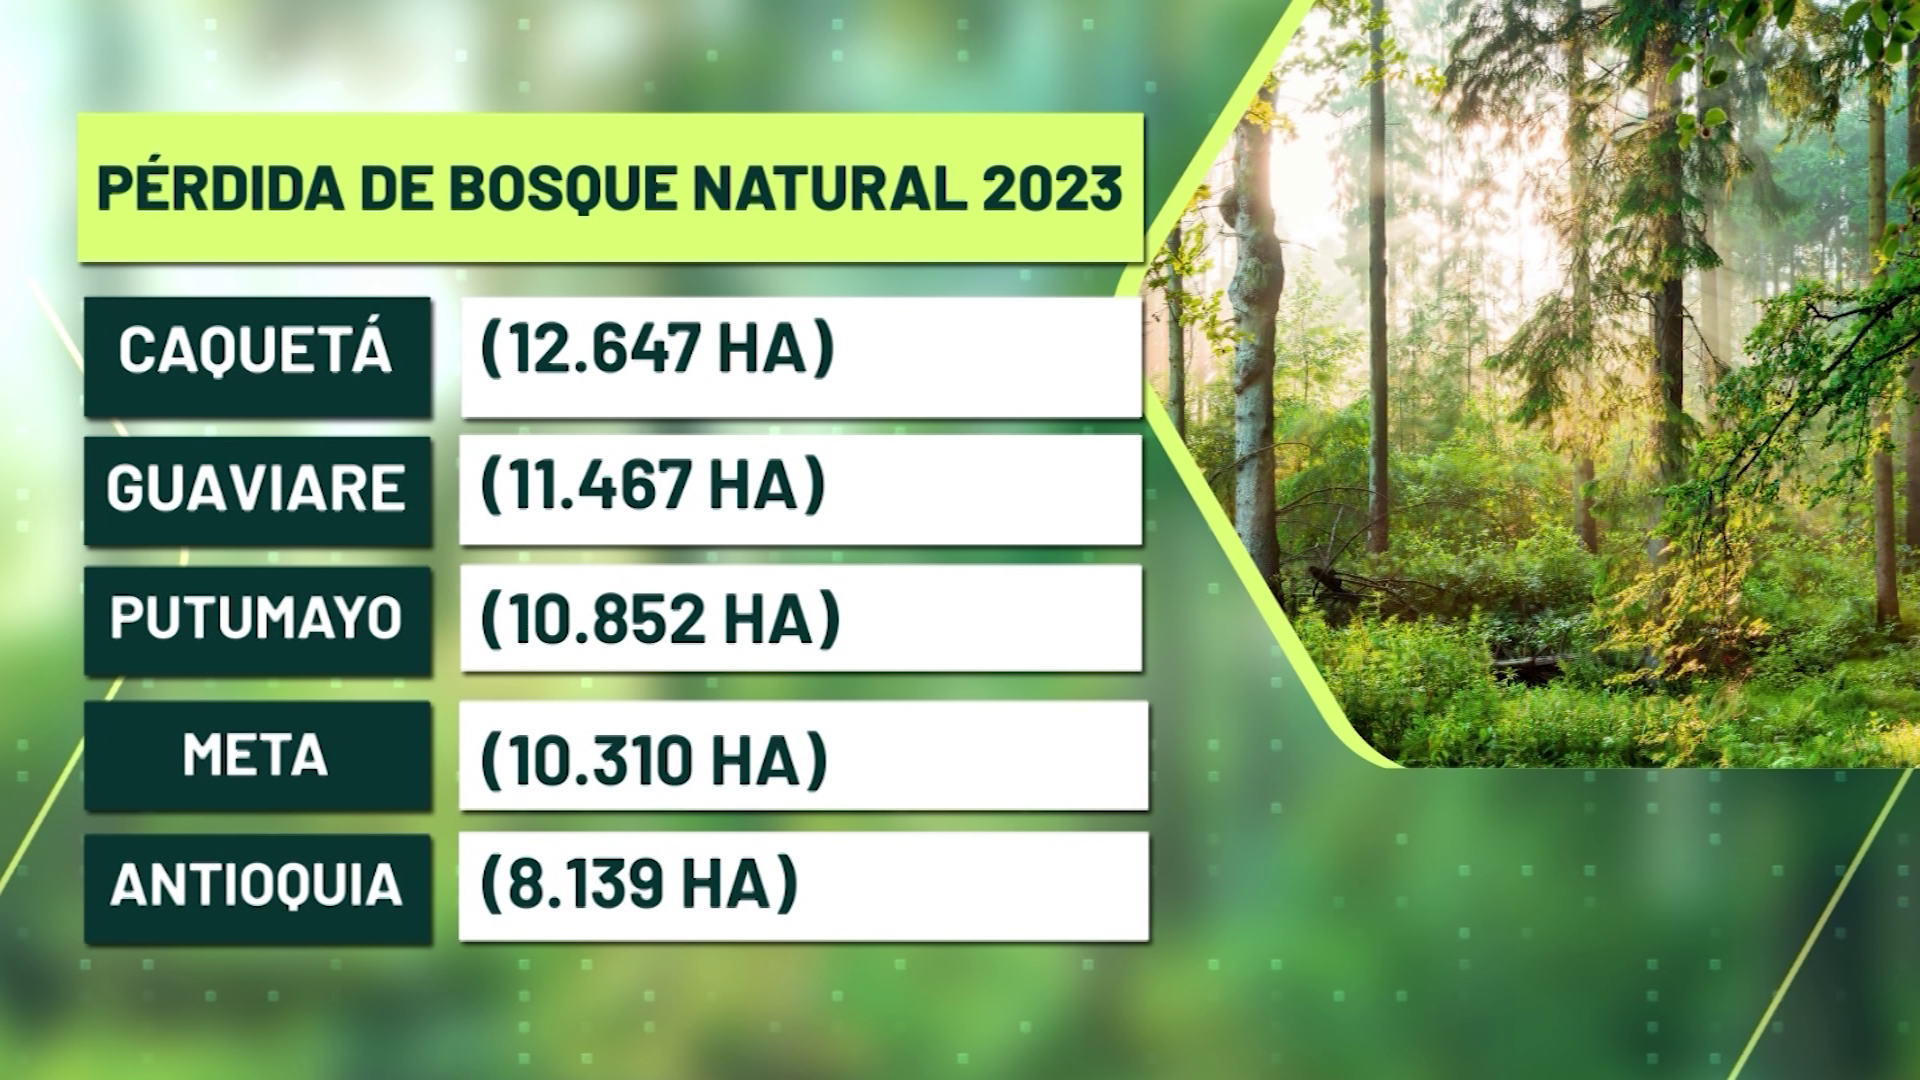 En 2023 Antioquia perdió 8.139 hectáreas de bosque